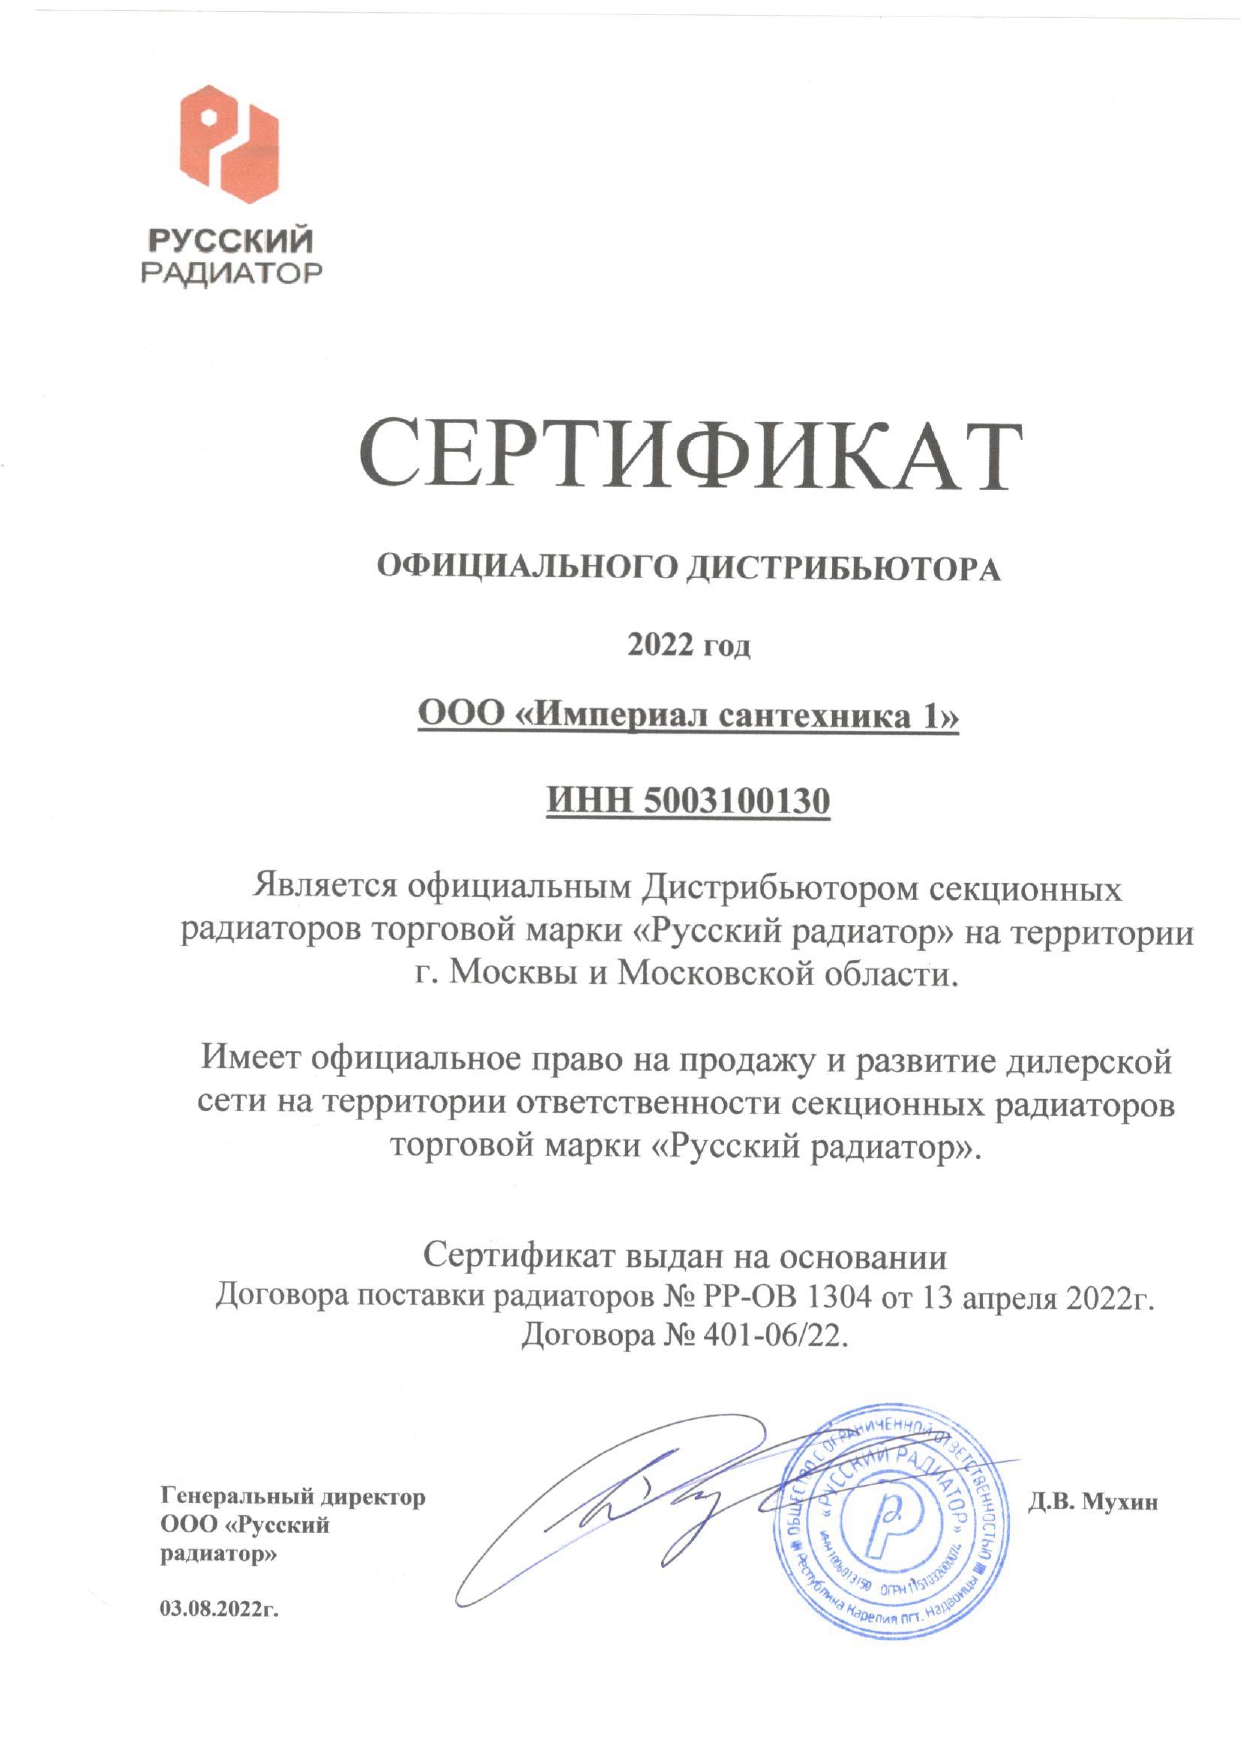 Сертификат официального дистрибьютора секционных радиаторов торговой марки РУССКИЙ РАДИАТОР 2022 г..jpg